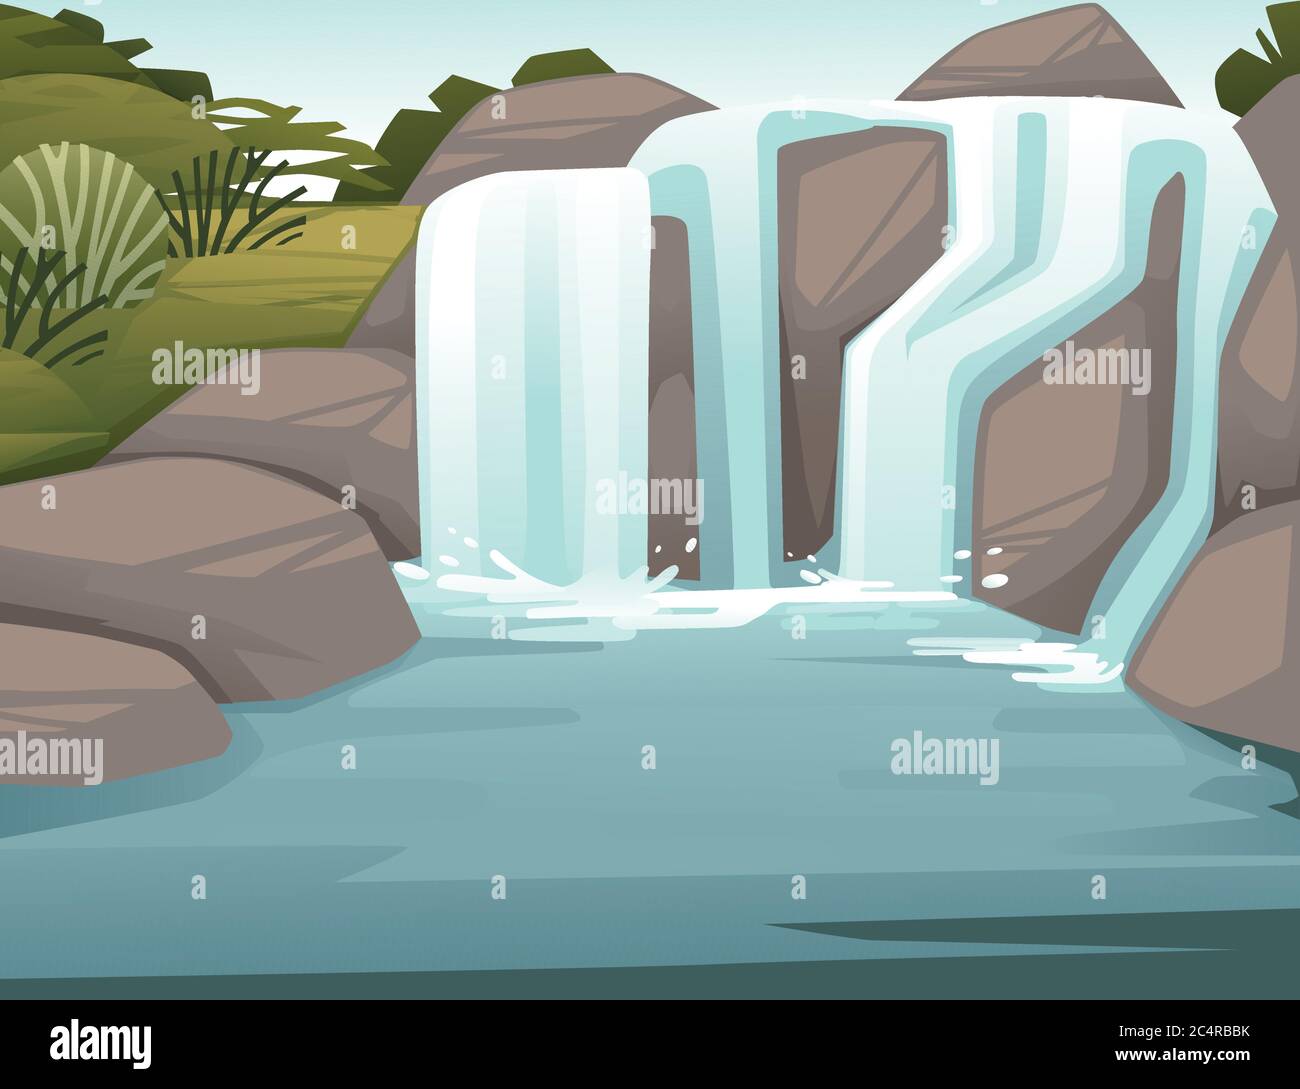 Paysage de campagne cascade sur des rochers dessin animé dessin vectoriel plat illustration Illustration de Vecteur